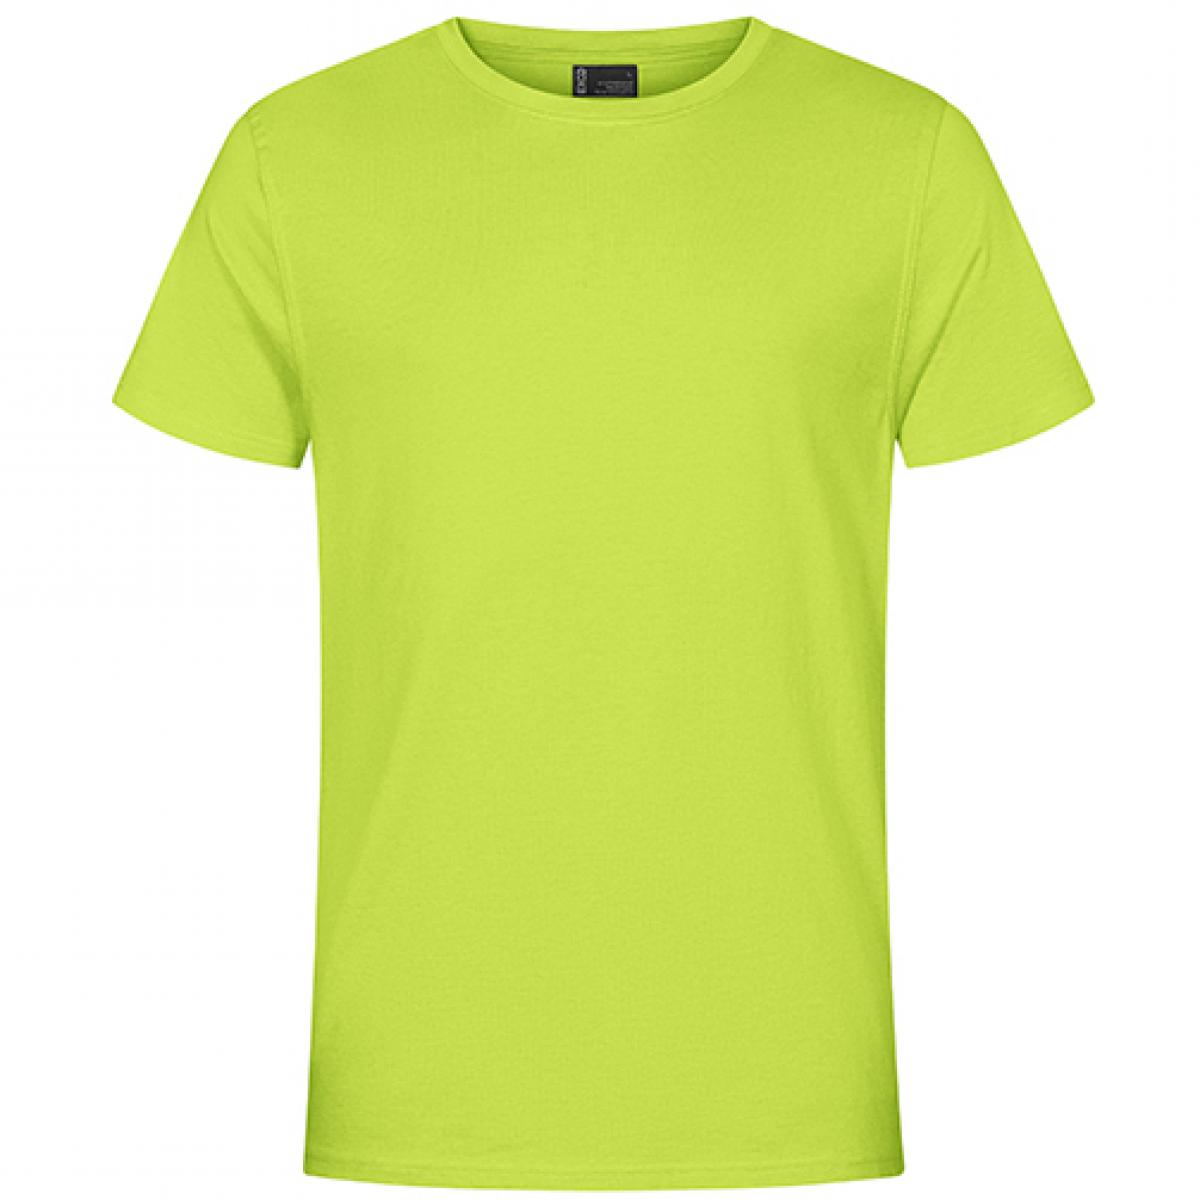 Hersteller: EXCD by Promodoro Herstellernummer: 3077 Artikelbezeichnung: Herren T-Shirt, Single-Jersey Farbe: Apple Green